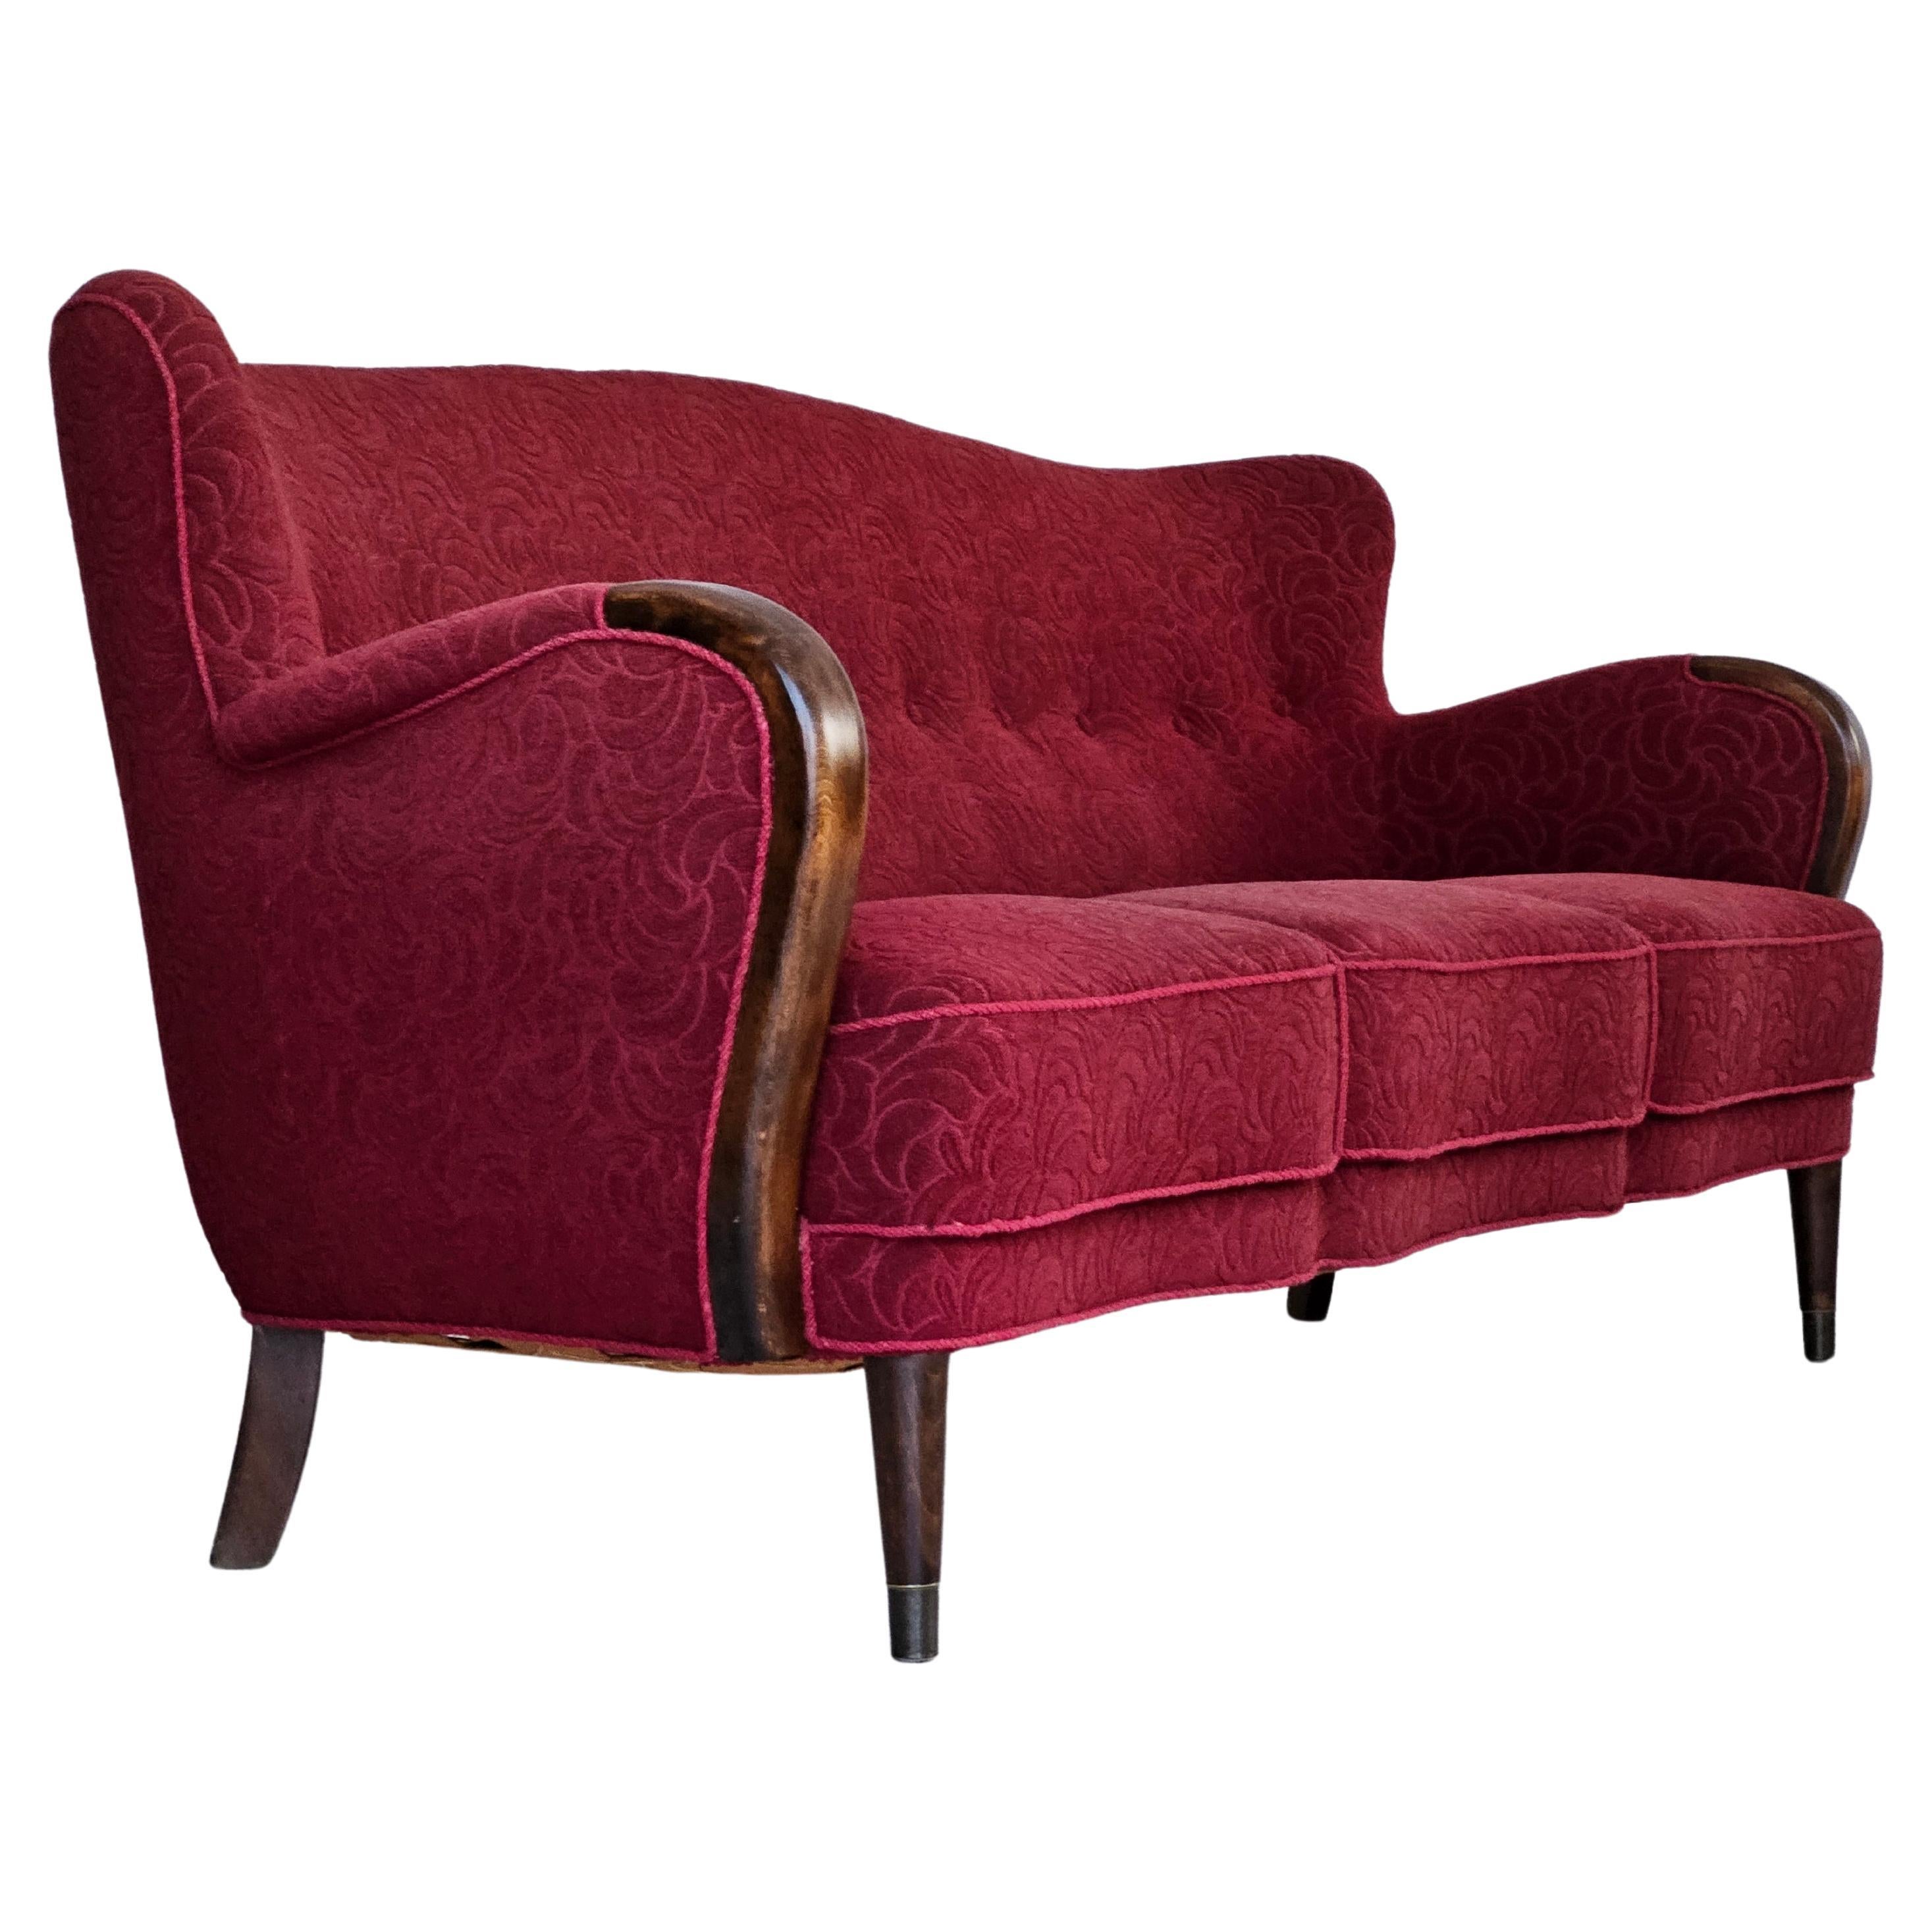 1950–60er Jahre, dänisches 3-Sitzer-Sofa, originaler Zustand, rote Baumwolle/Wolle, Buchenholz.